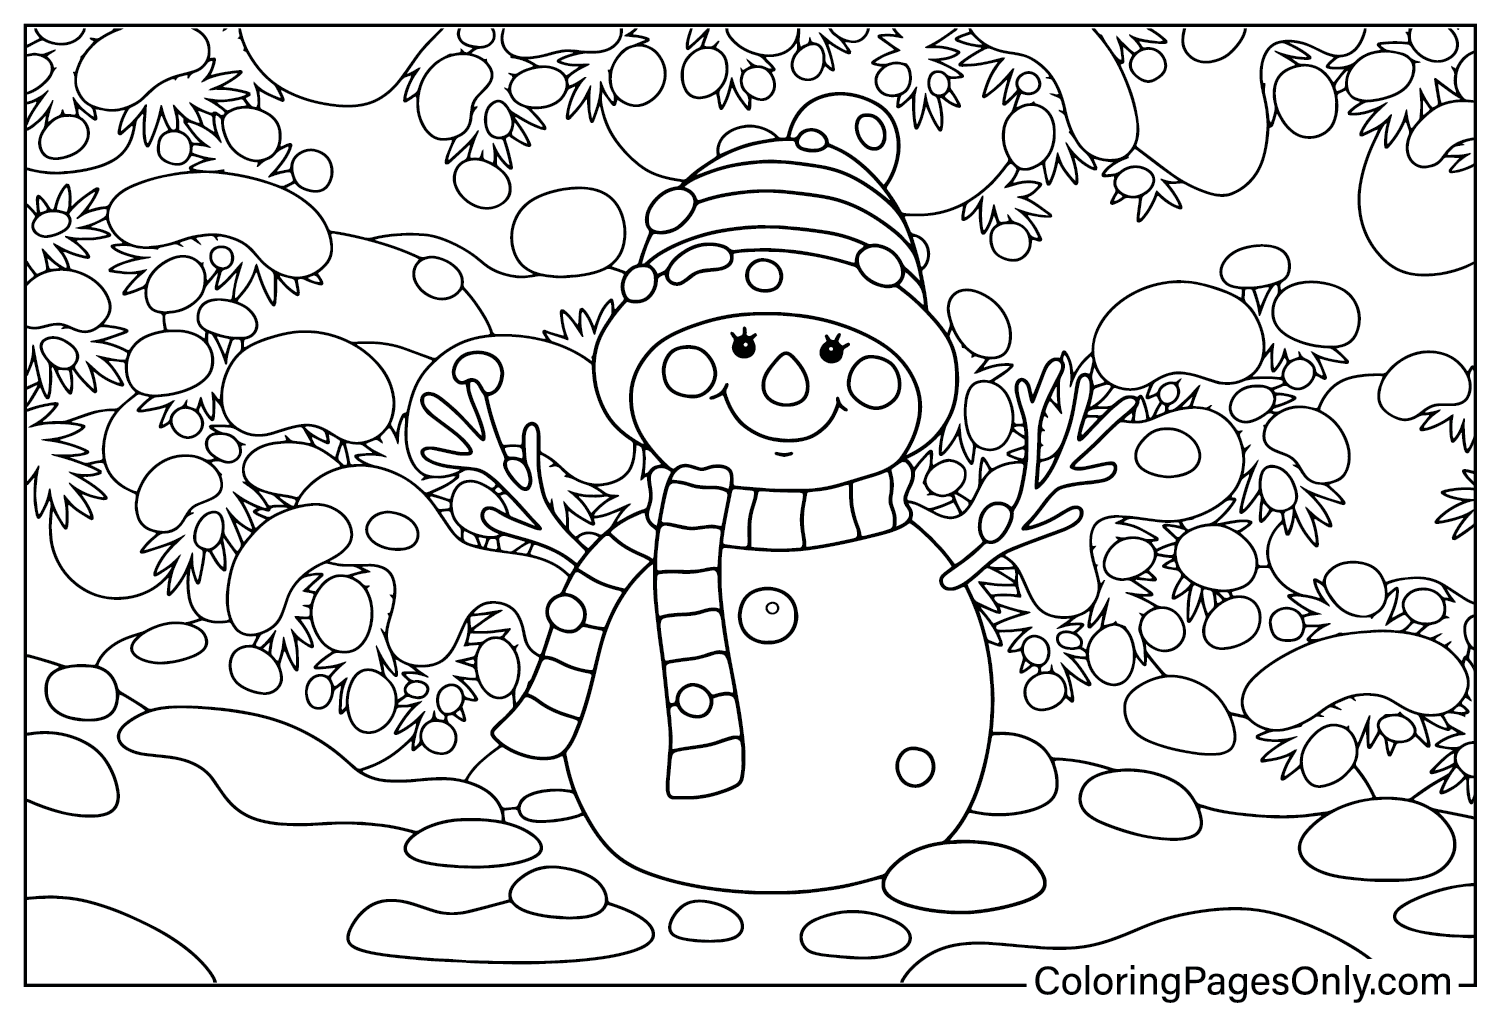 Página para colorir de boneco de neve de inverno